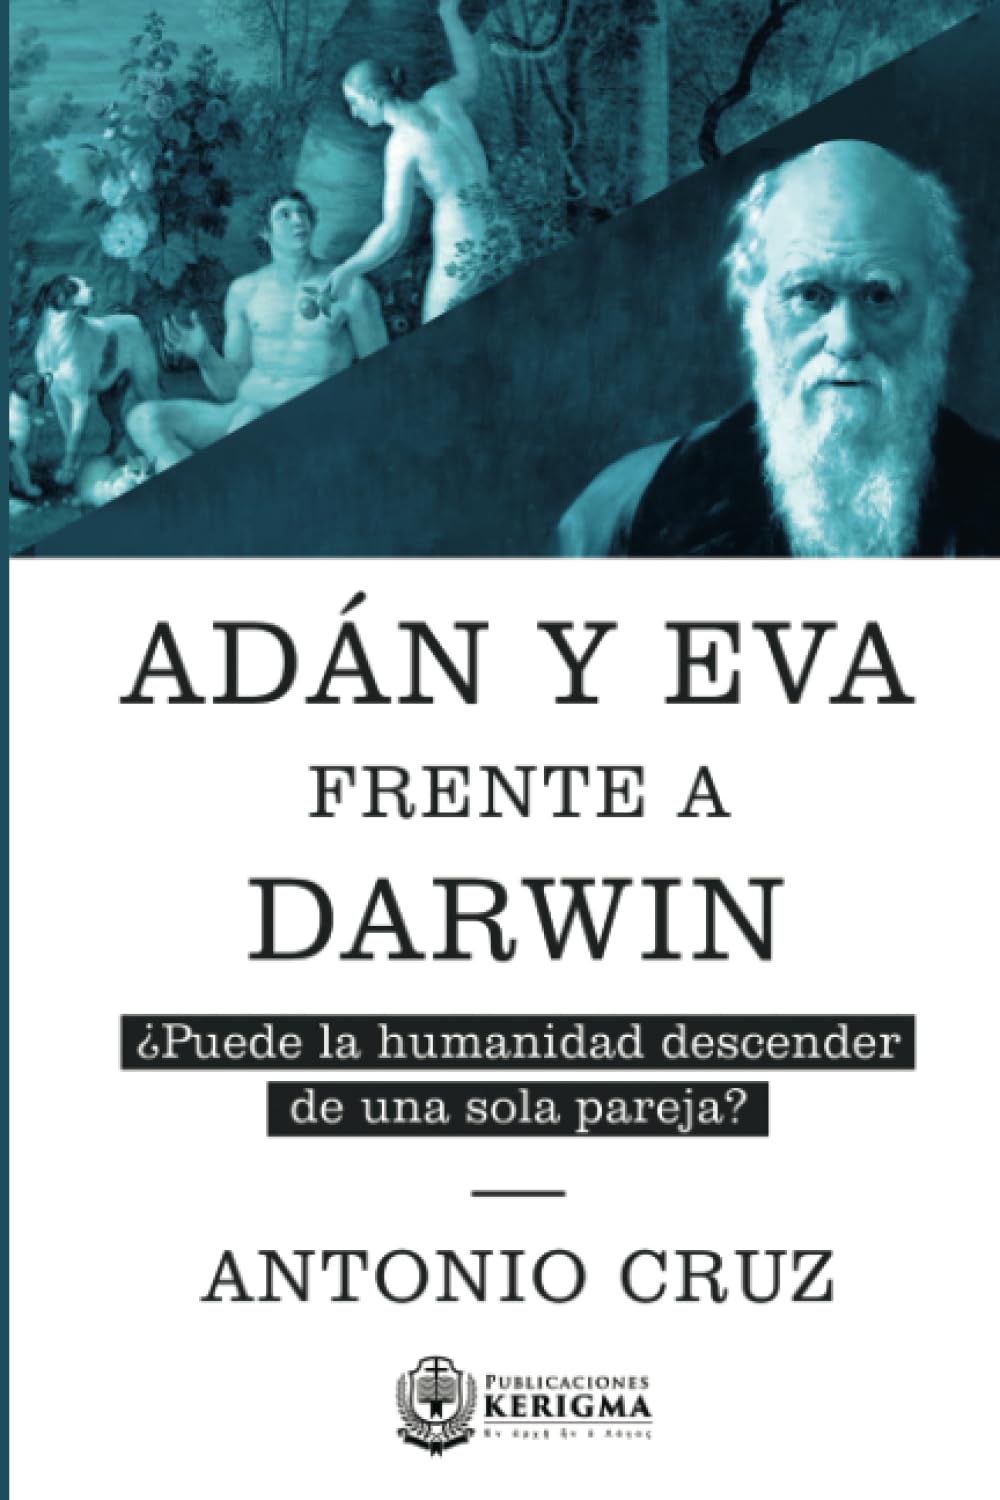 Adán y Eva frente a Darwin